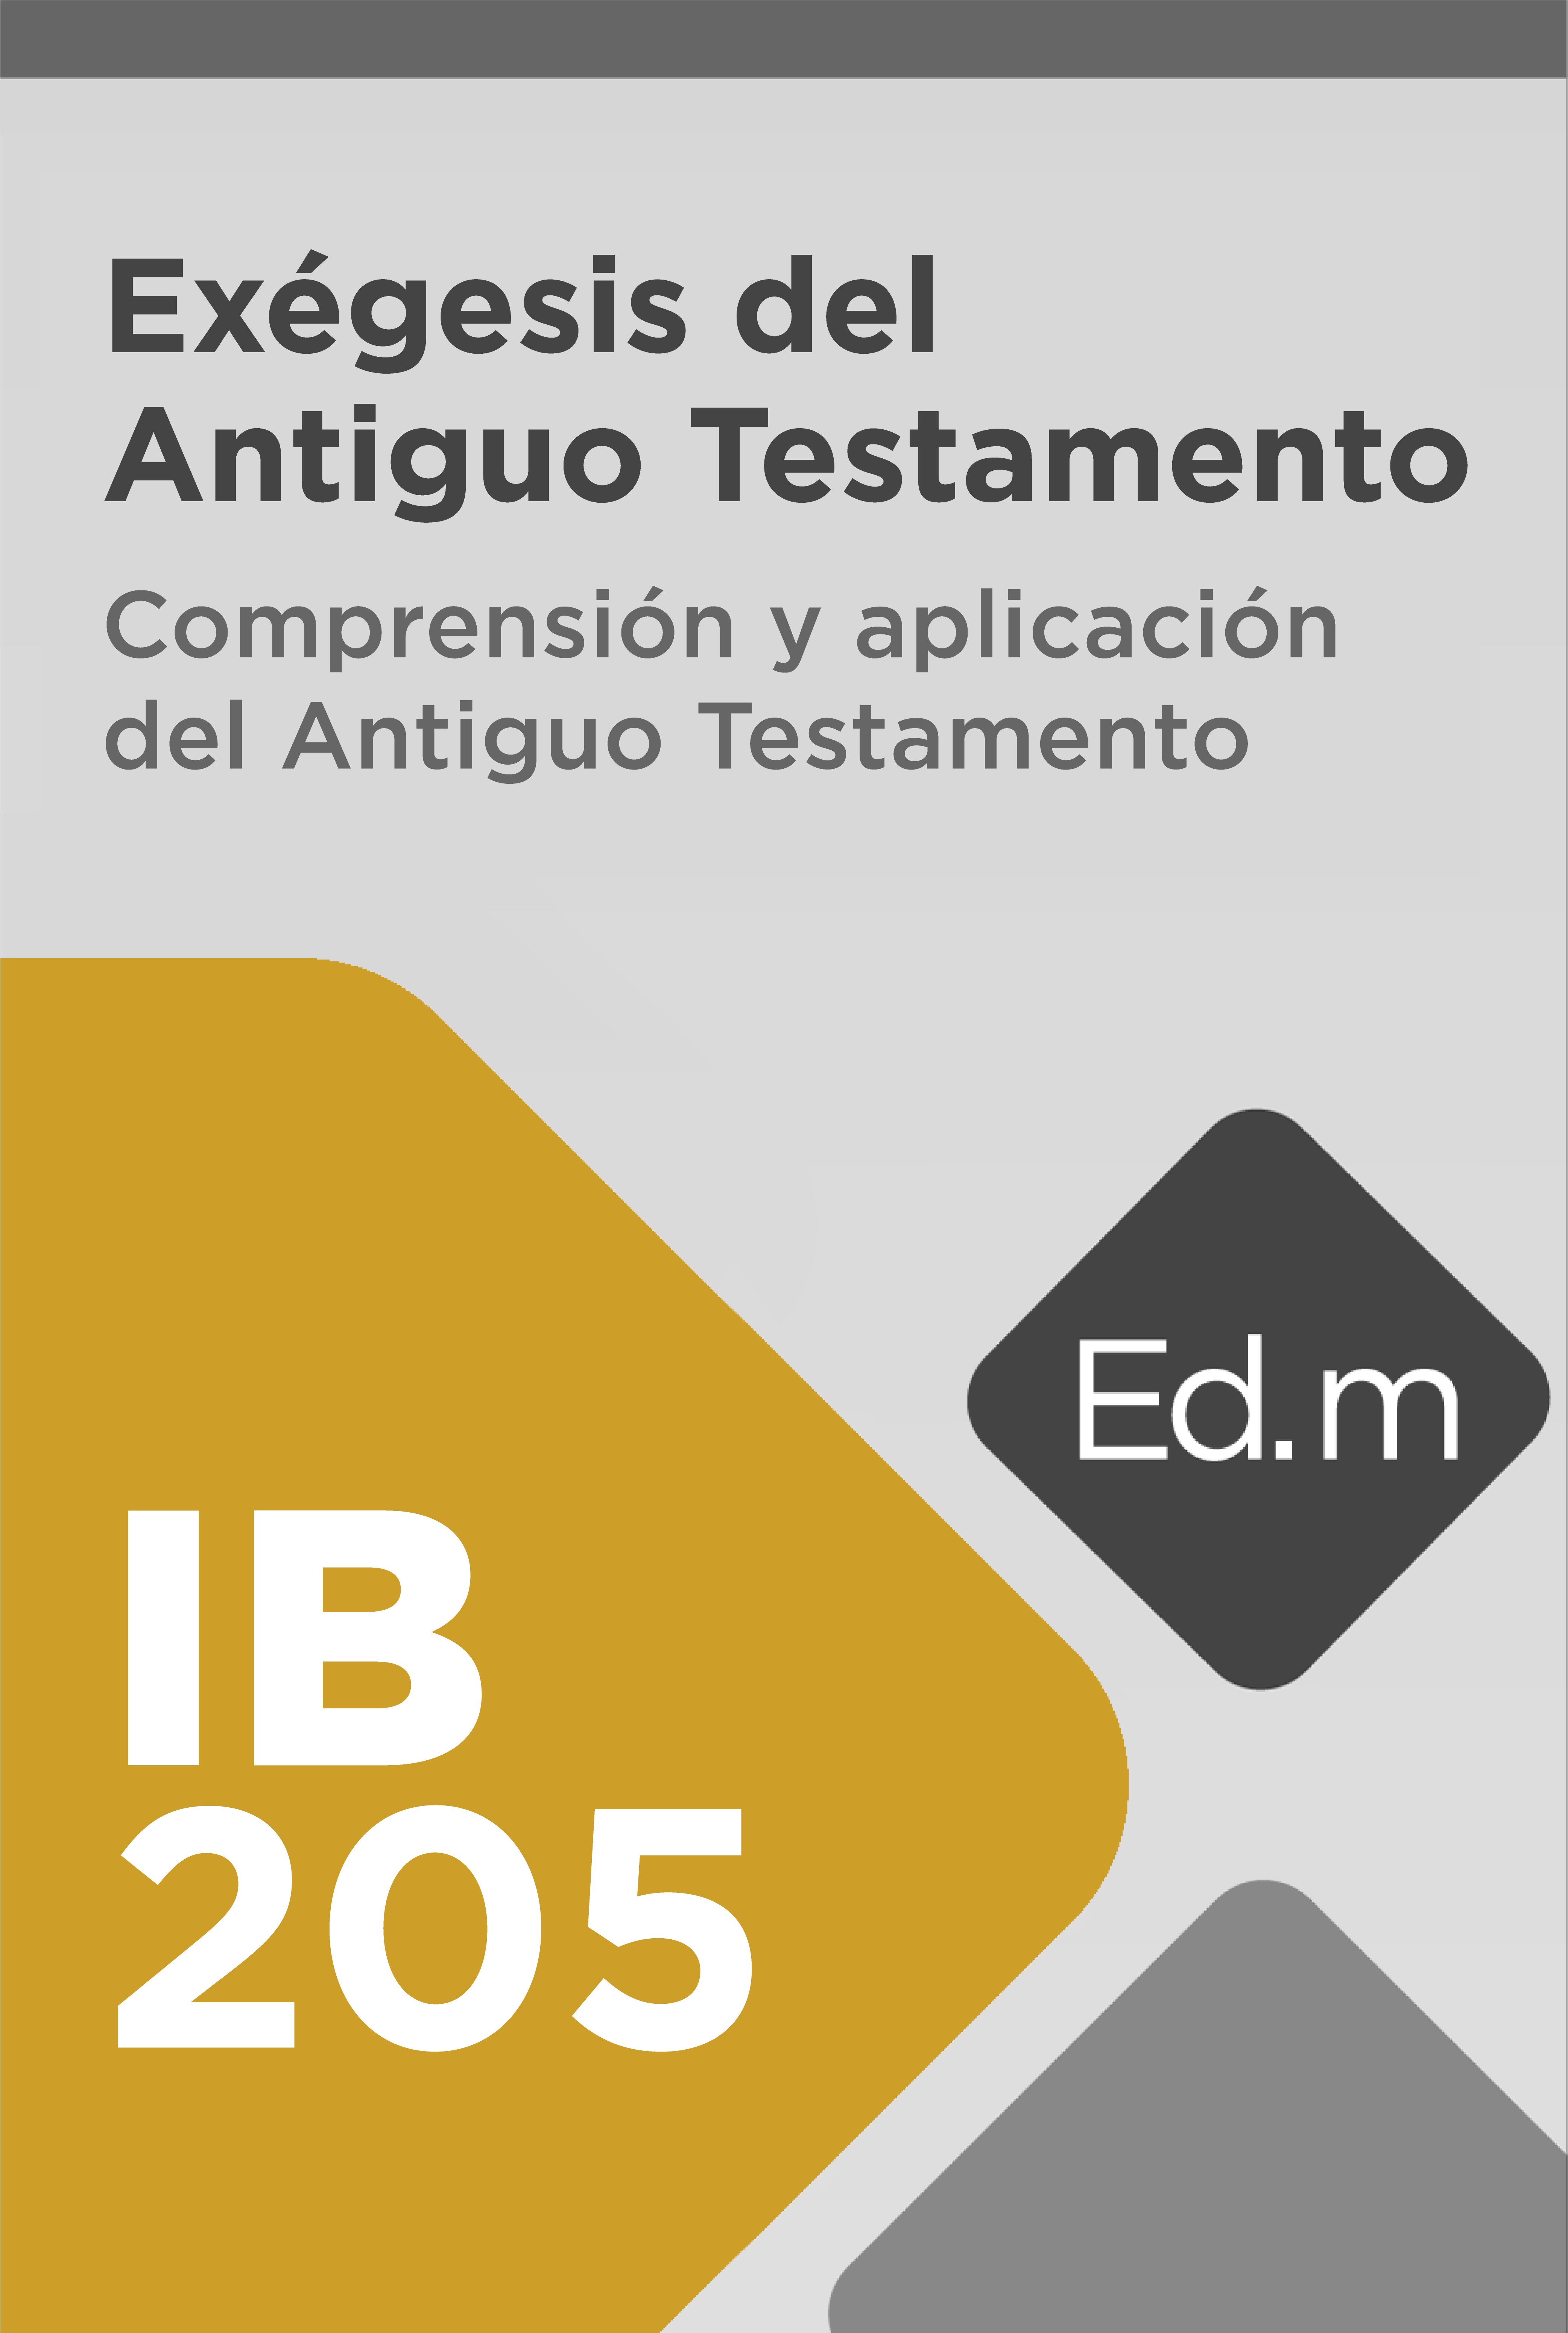 Ed. Móvil: IB205 Exégesis del Antiguo Testamento Comprensión y aplicación del Antiguo Testamento